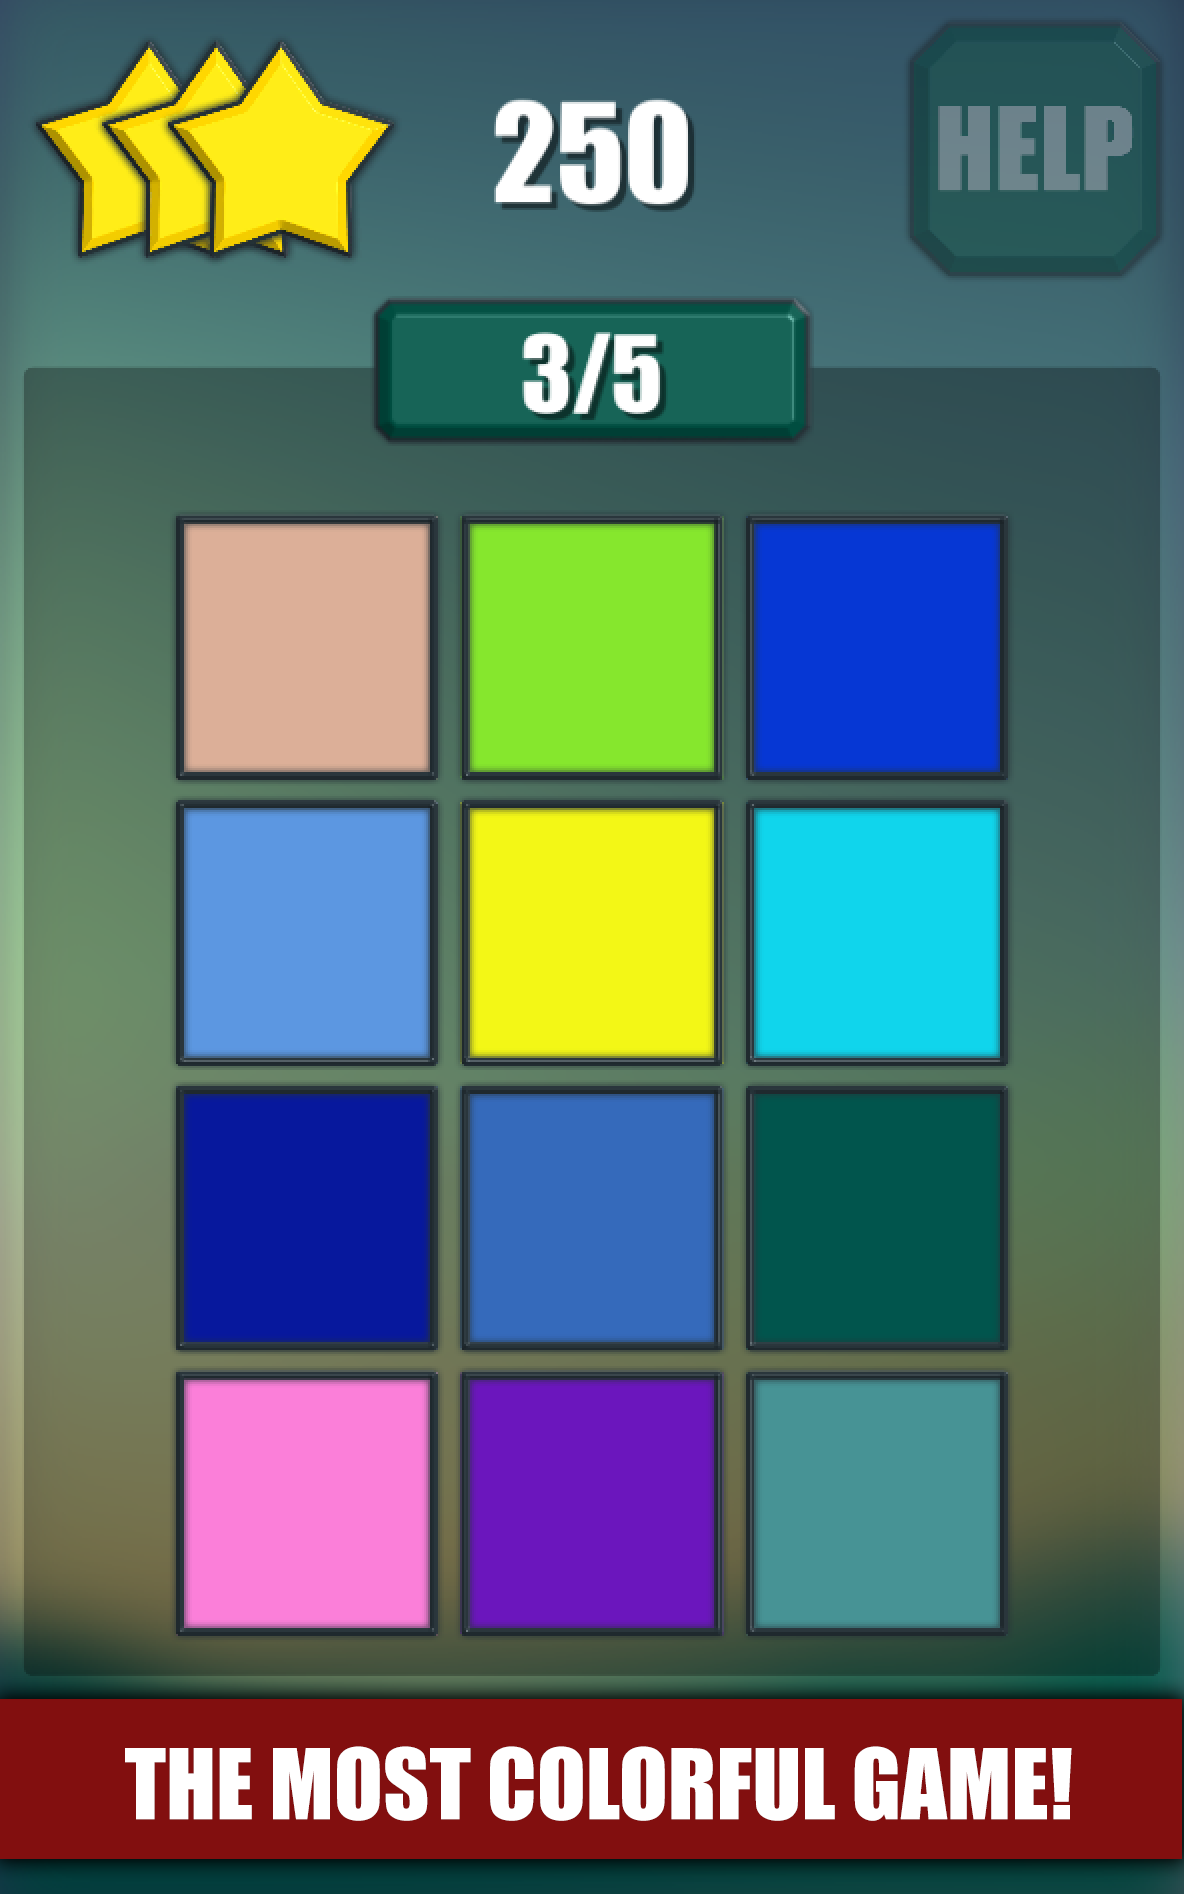 Color Match Puzzle